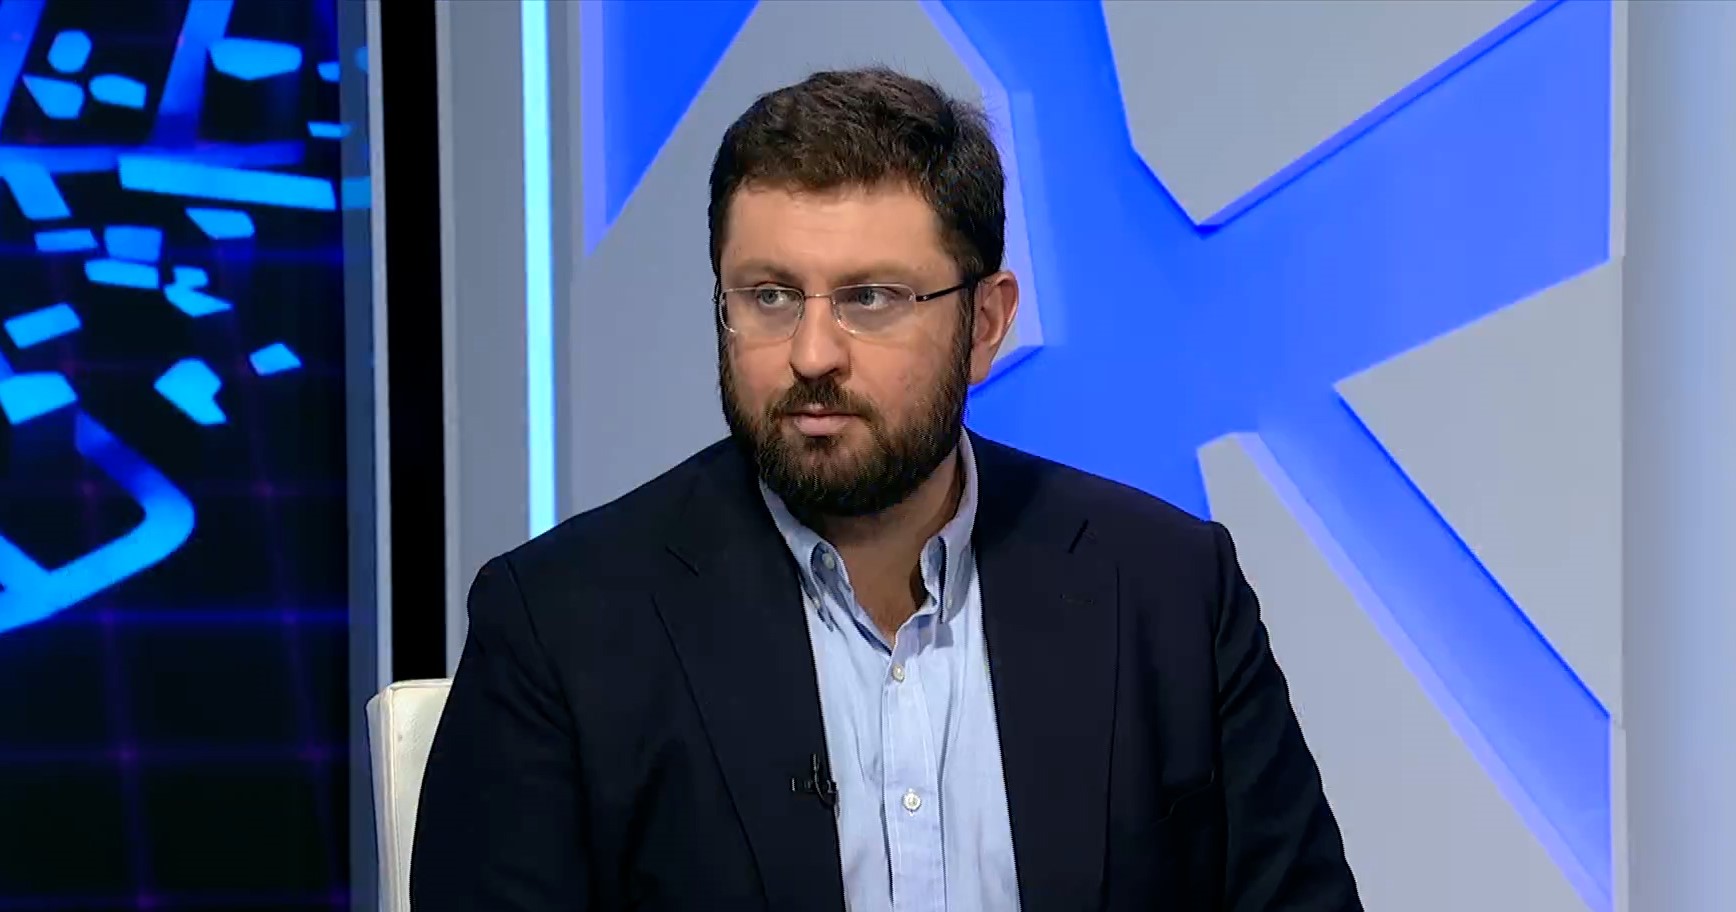 Κ. Ζαχαριάδης στο Πρώτο: Προτιμότερος ένας πολιτισμένος πολιτικός χωρισμός από την λεκτική βία και την ένταση (audio)